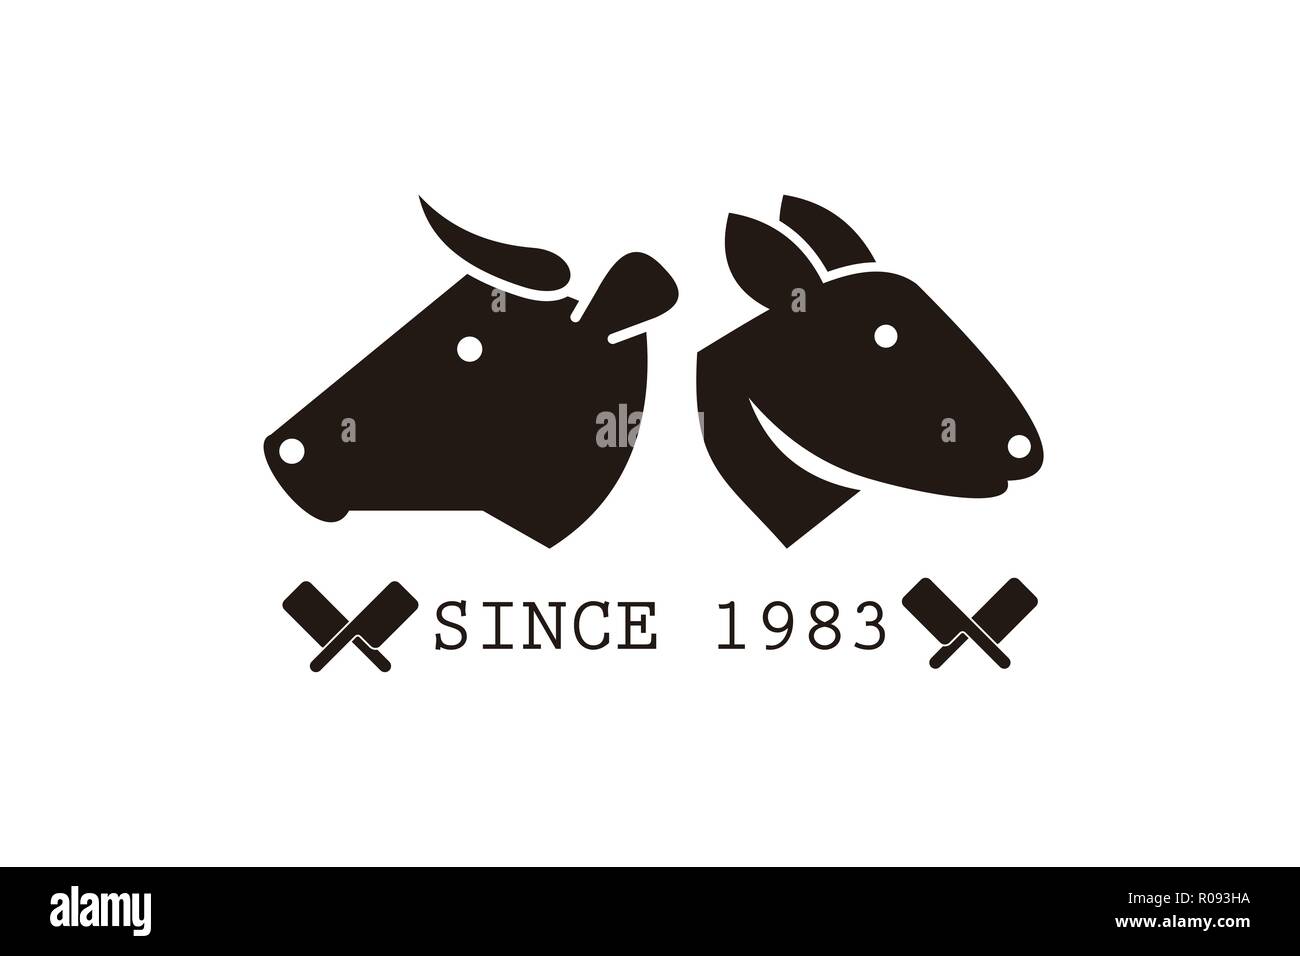 Lapin, Cow Head, traversé le couteau d'abattage, dessins de logos Inspiration isolé sur fond blanc Illustration de Vecteur